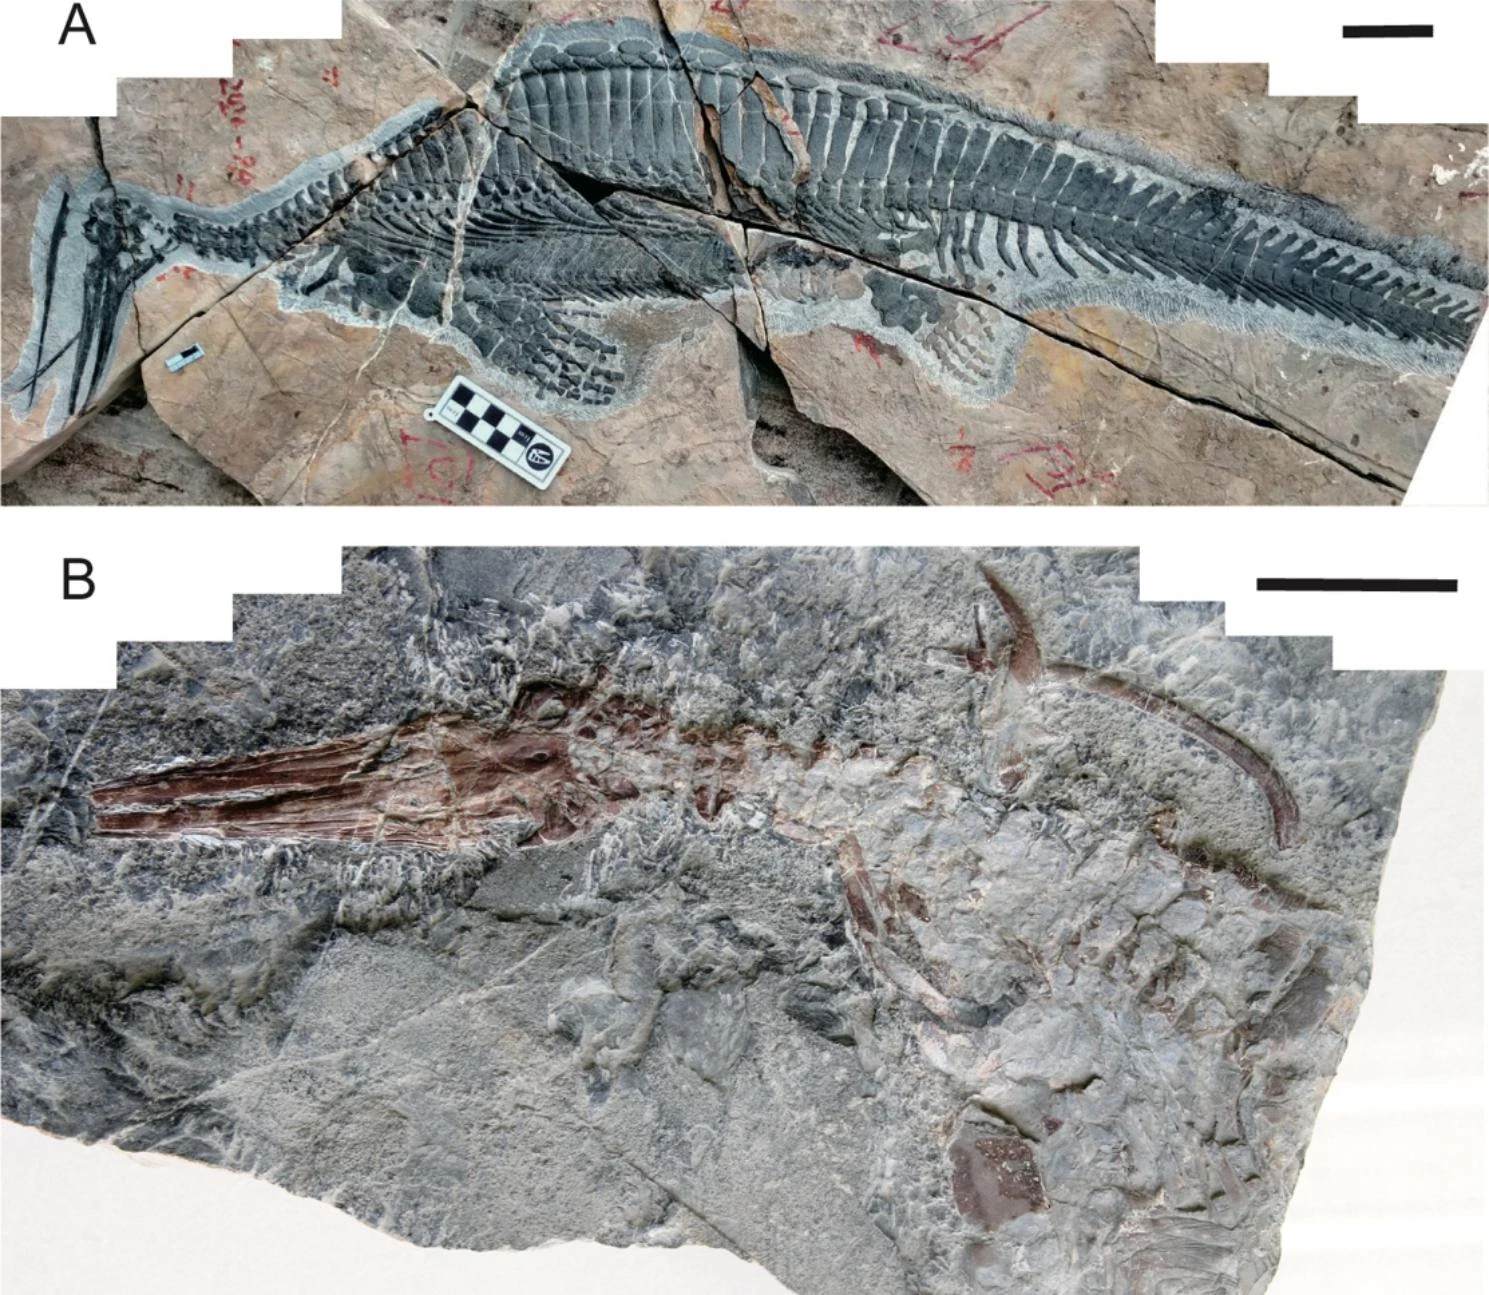 Hupehsuchus de 250 millones de años